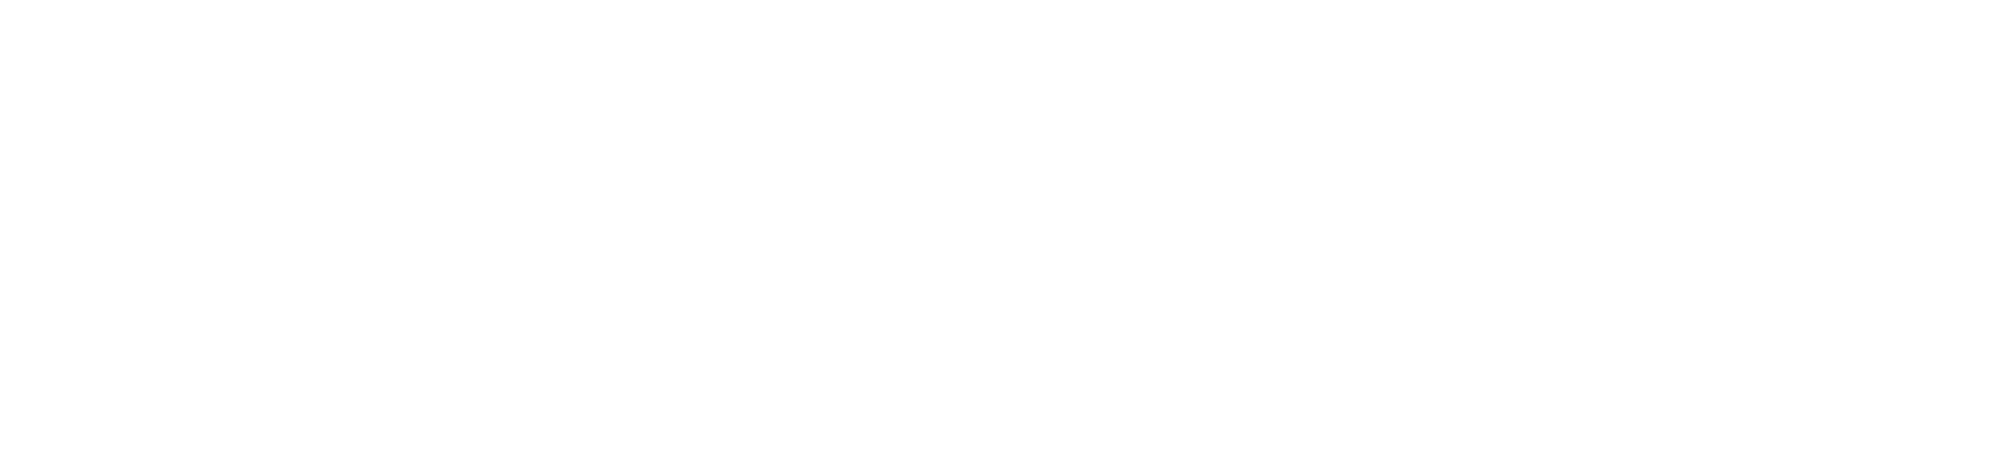 jacobbek-Gaming-branding-stacked